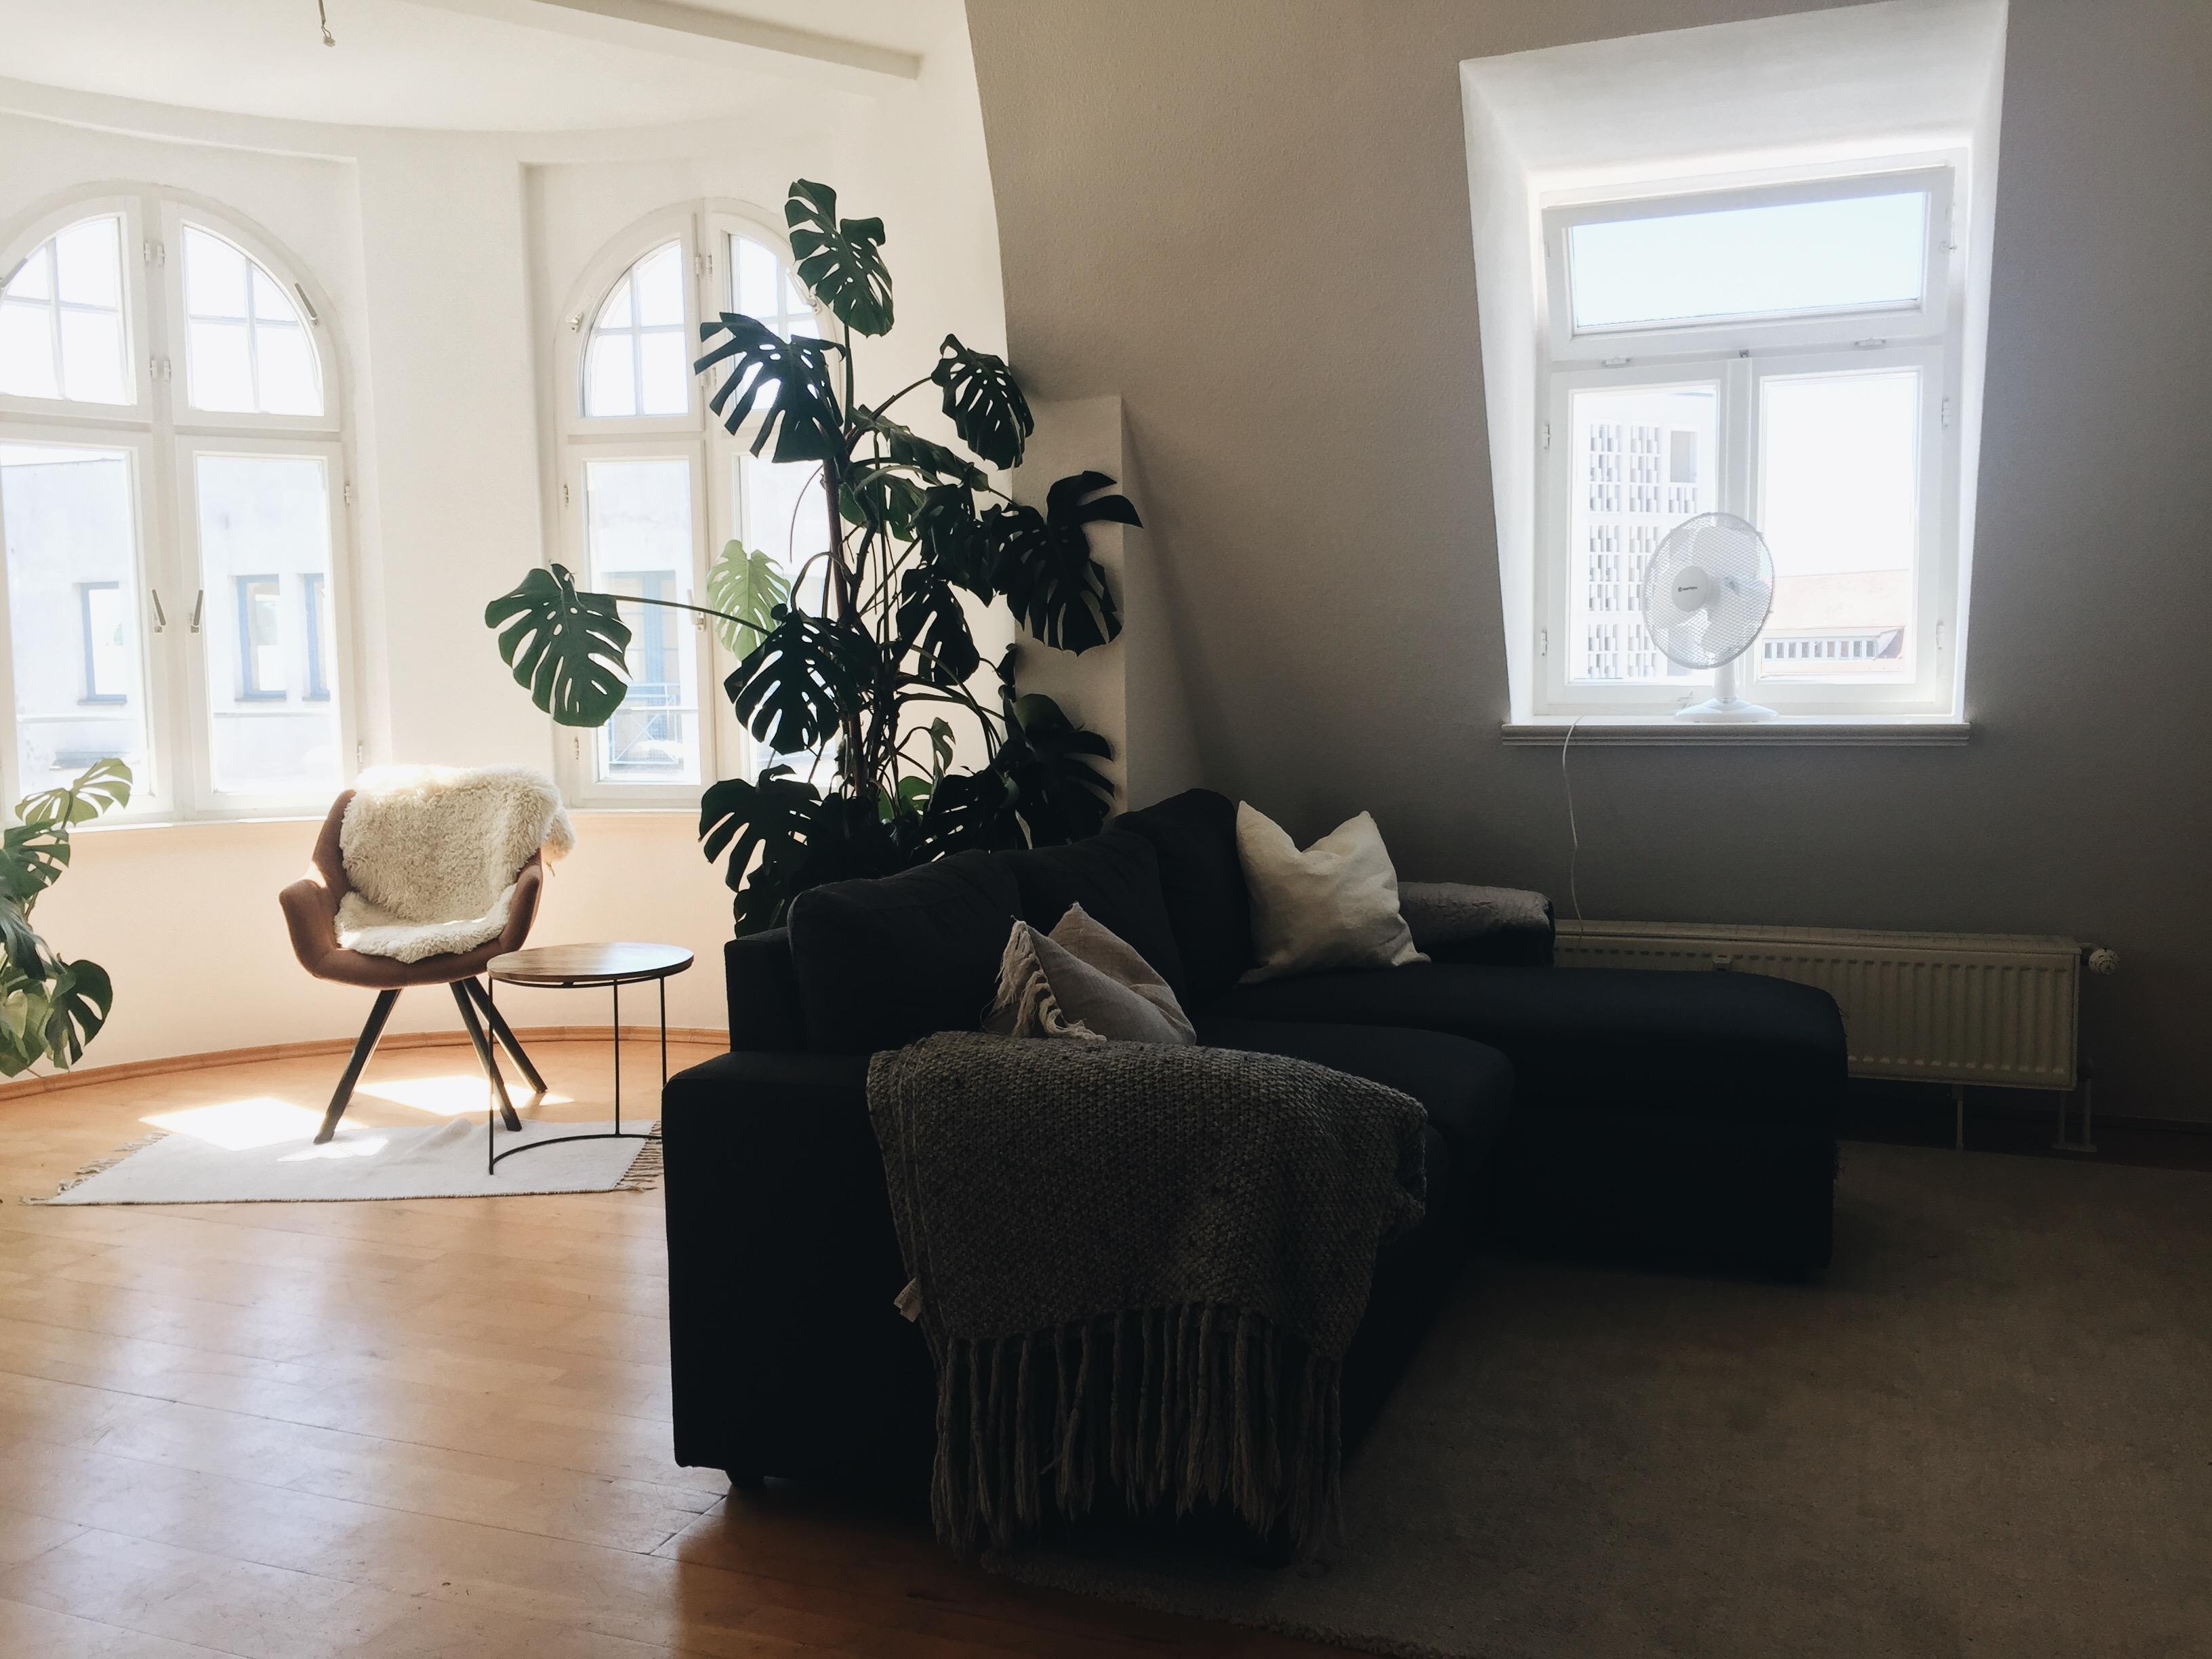 Zuhause 
#livingroom #solebich #minimalism